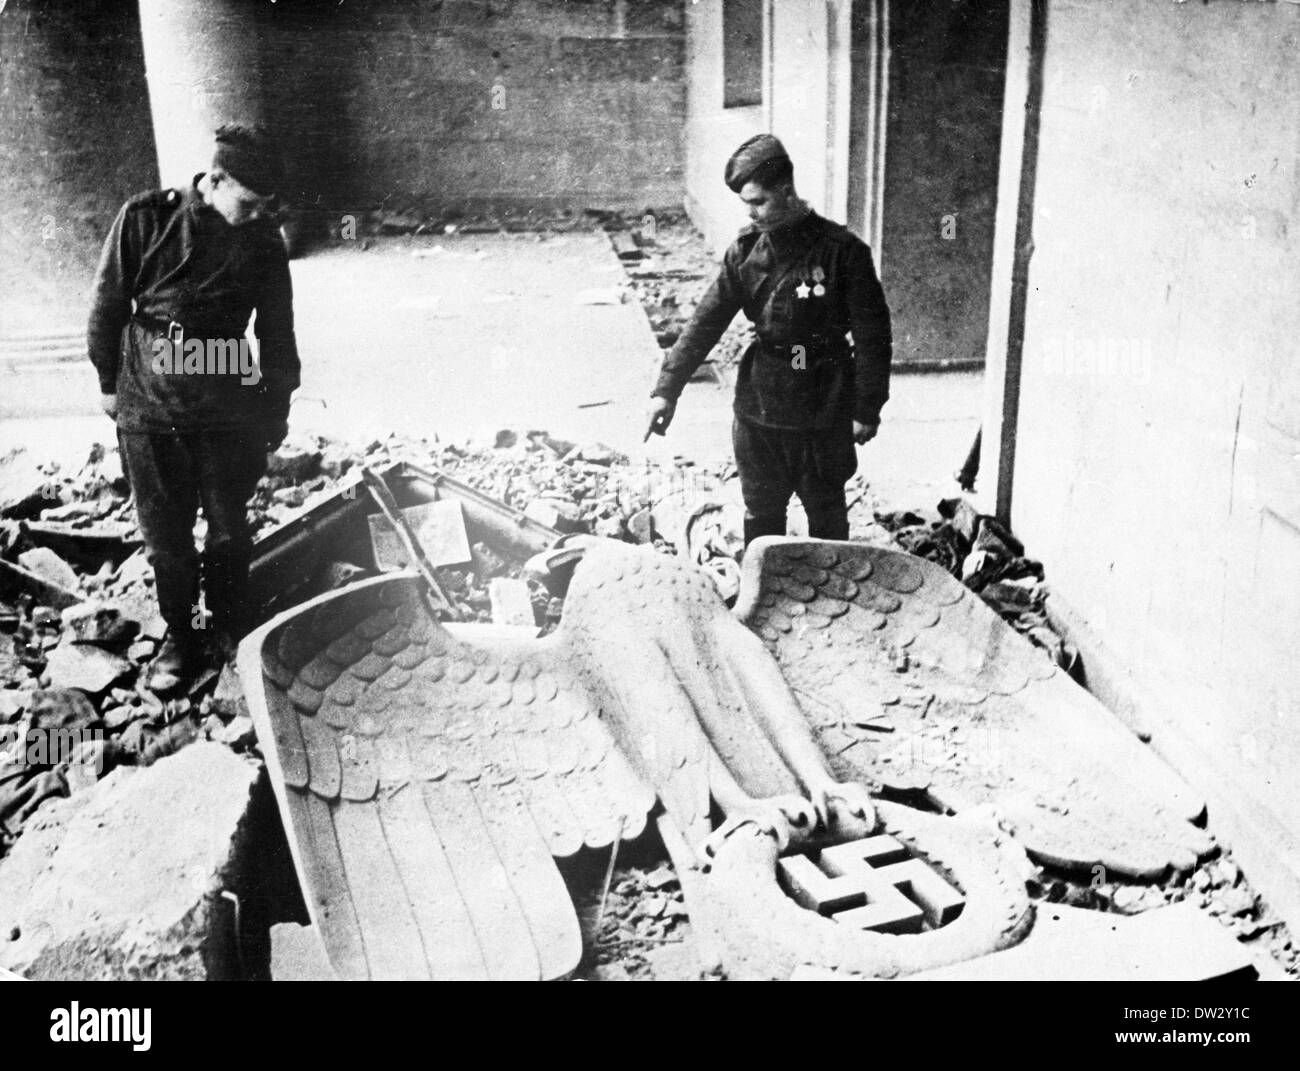 Fin de la guerre à Berlin 1945 - les soldats soviétiques se tiennent à côté d'une sculpture de Reichsadler avec la svastika. Fotoarchiv für Zeitgeschichte - PAS DE SERVICE DE FIL Banque D'Images